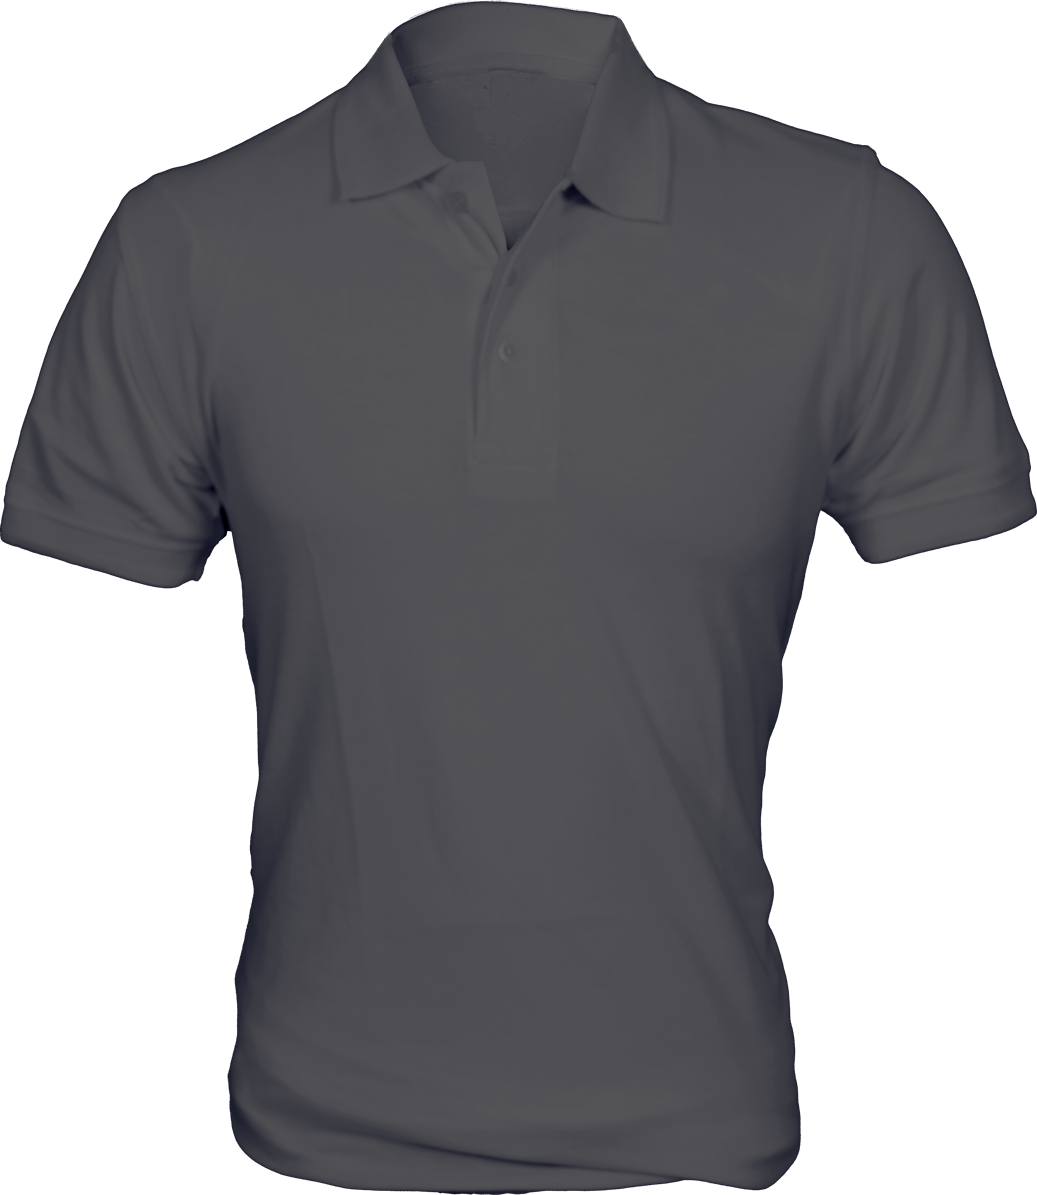 Collar T Shirt Plain 200 Gsm Frisky Global